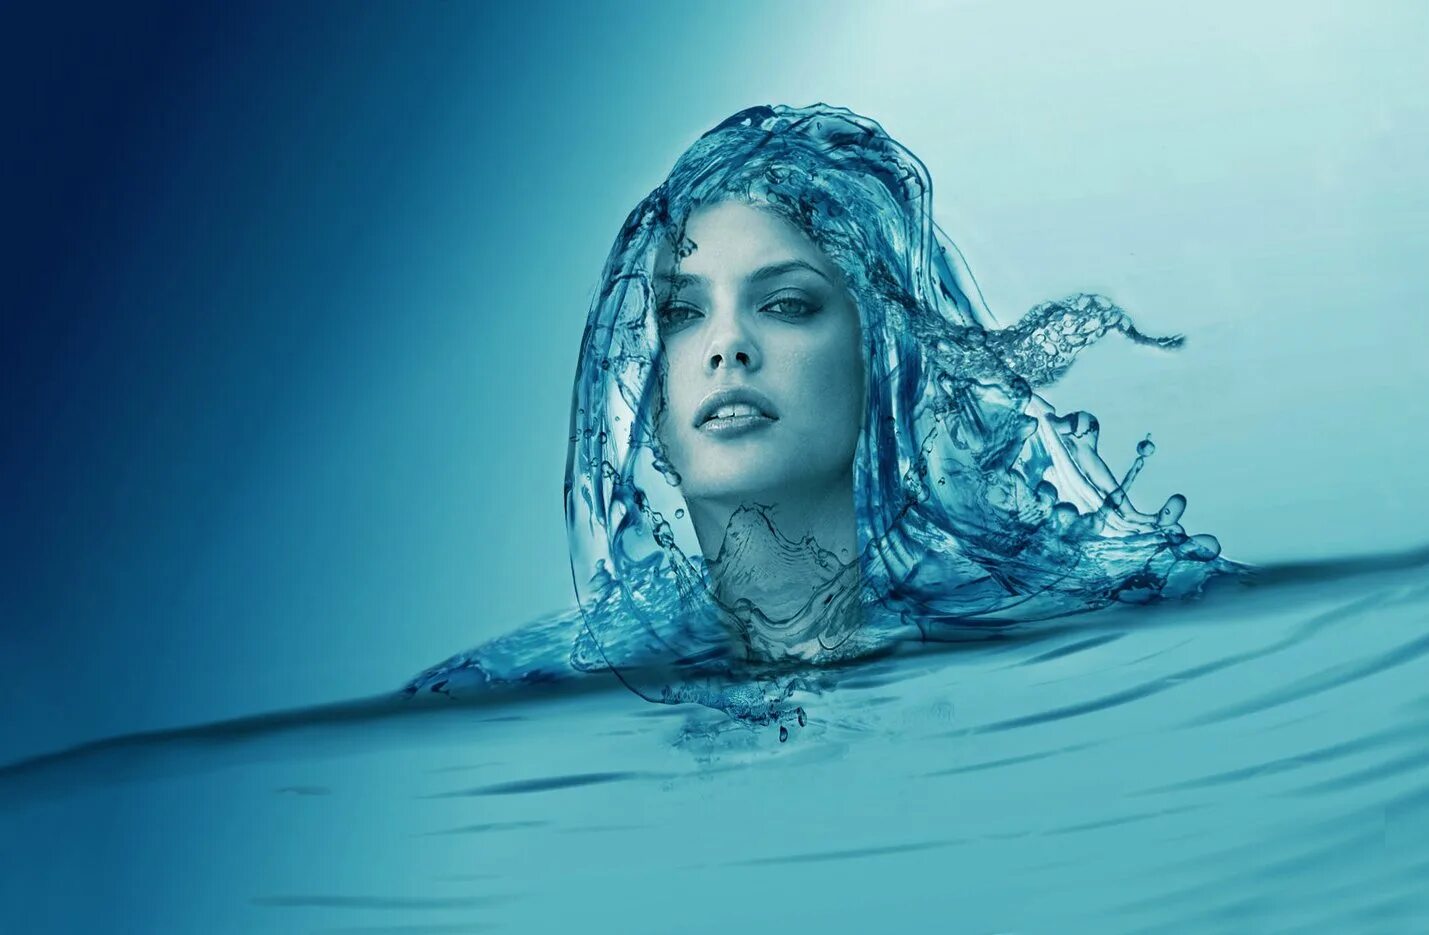 В волосах есть вода. Женщина вода. Образ воды. Женщина из воды. Девушка из воды.